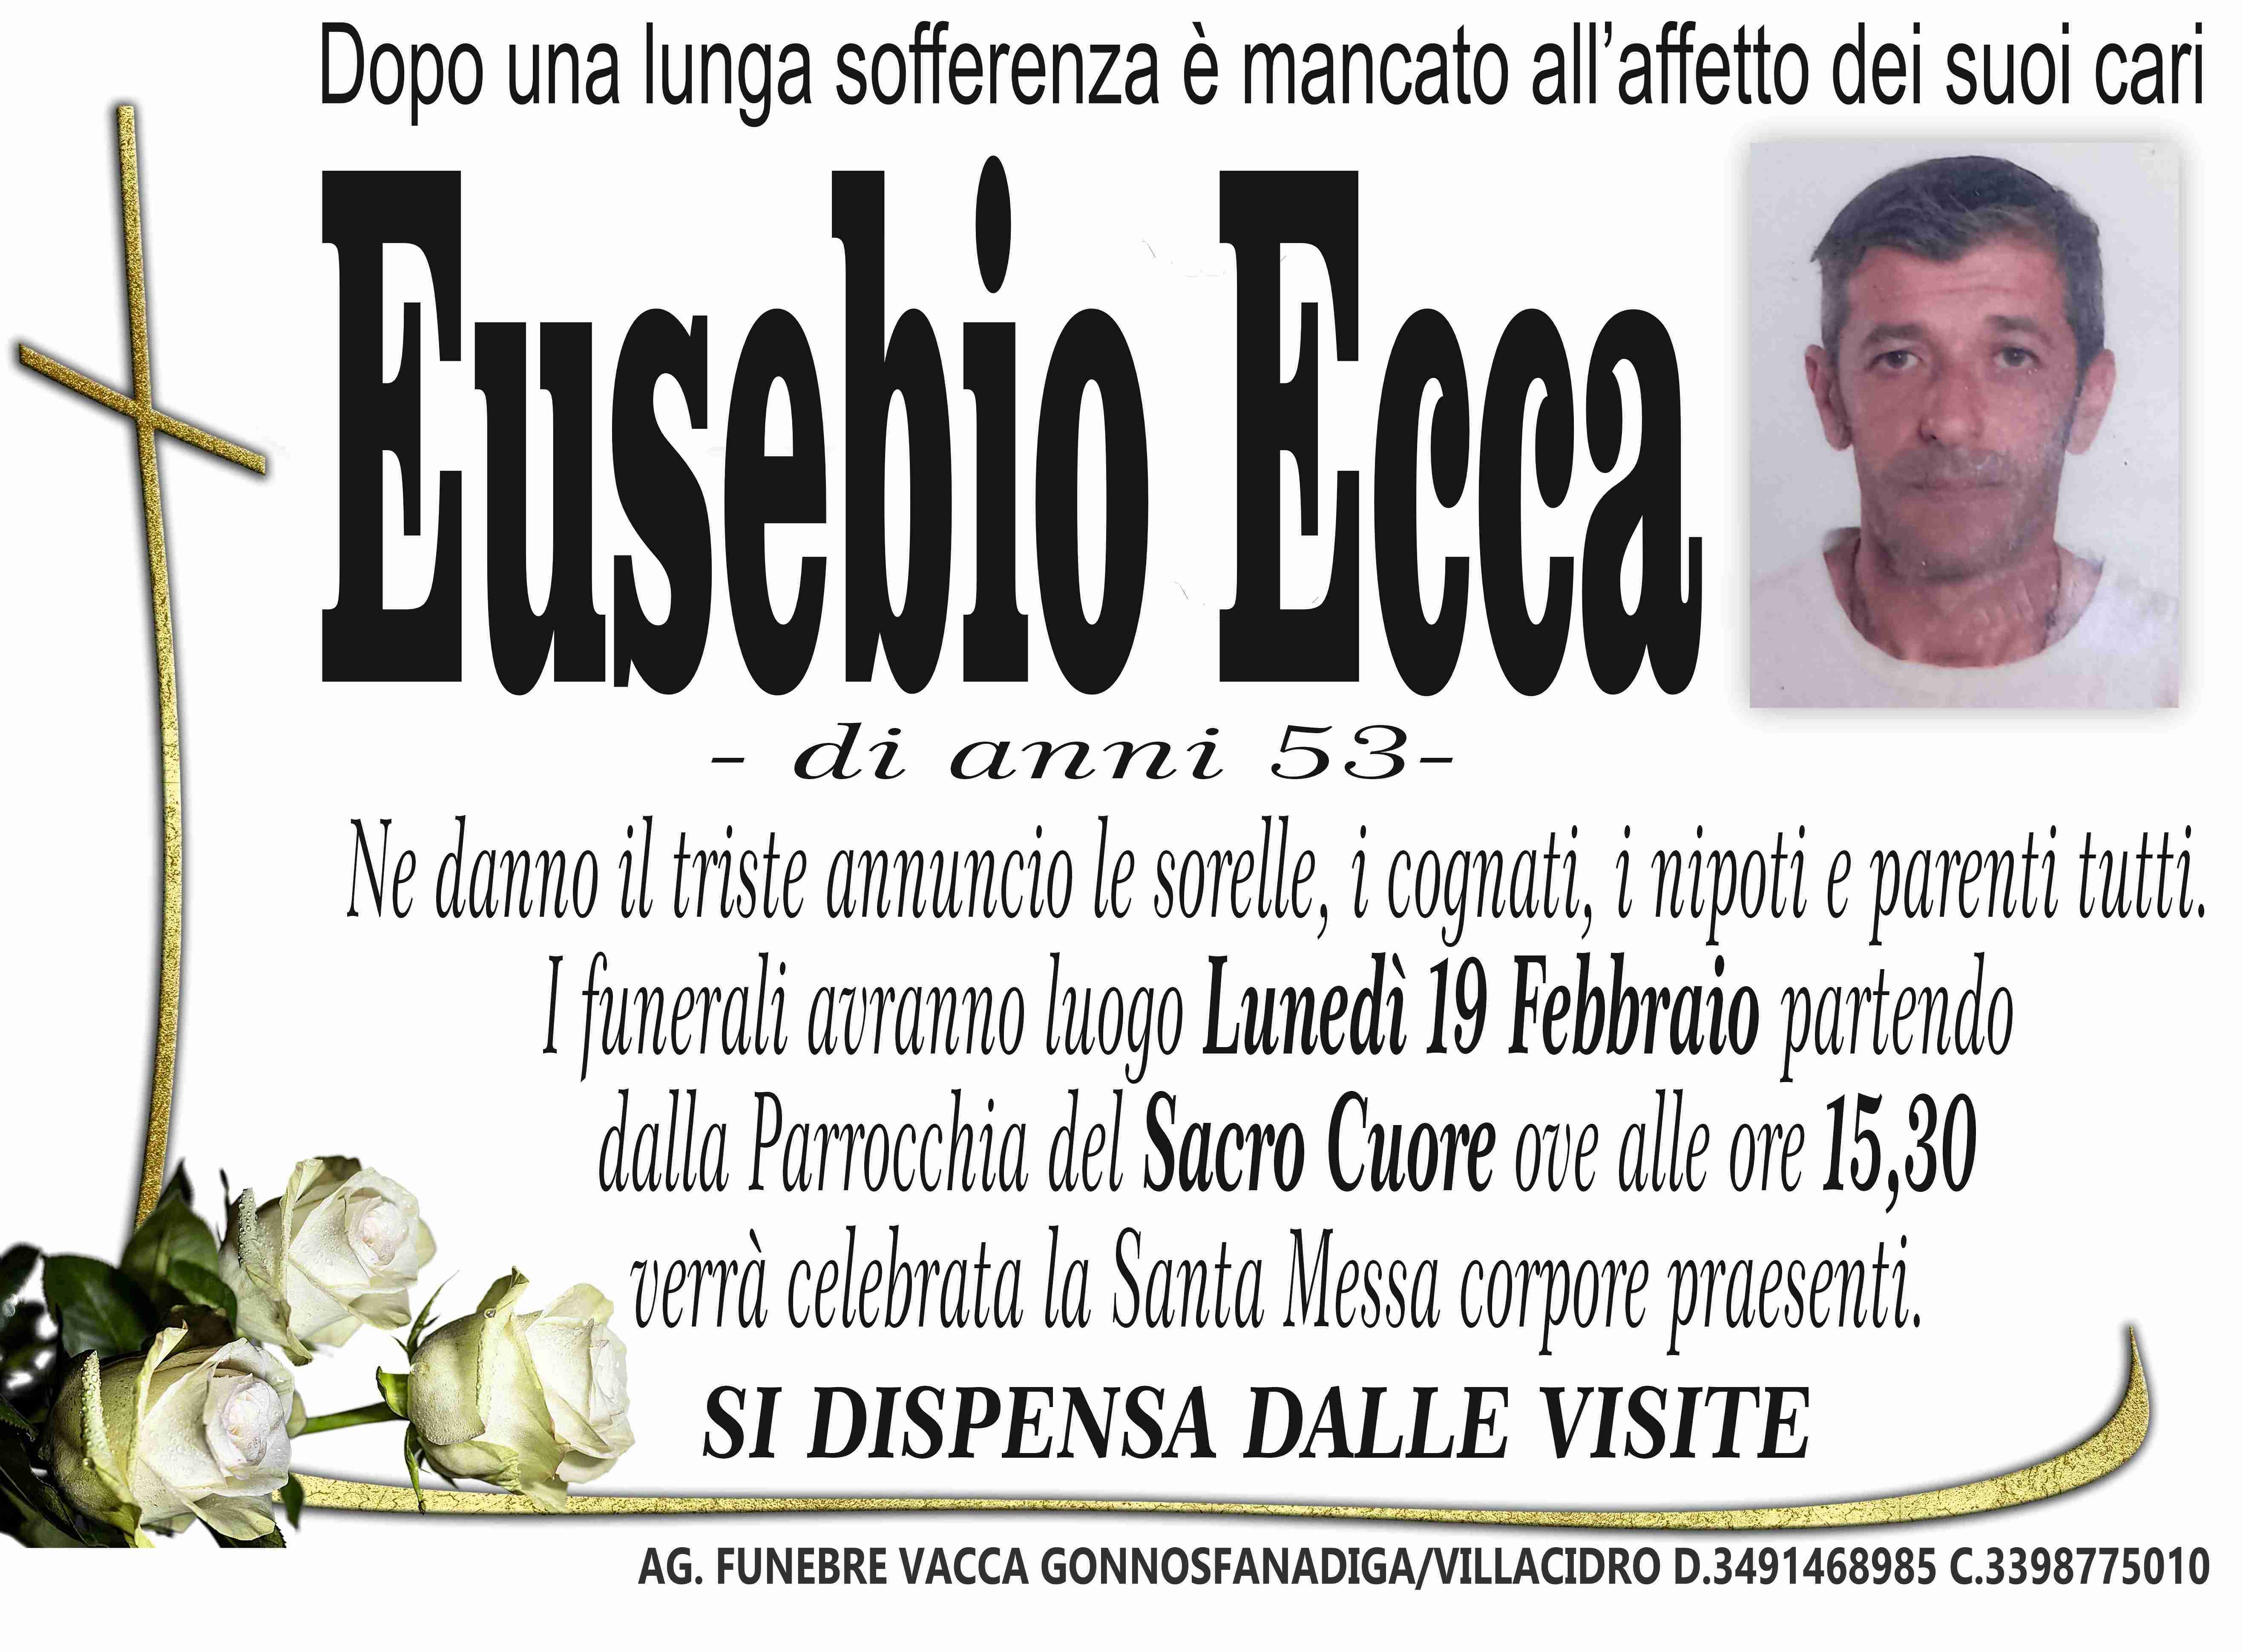 Eusebio Ecca